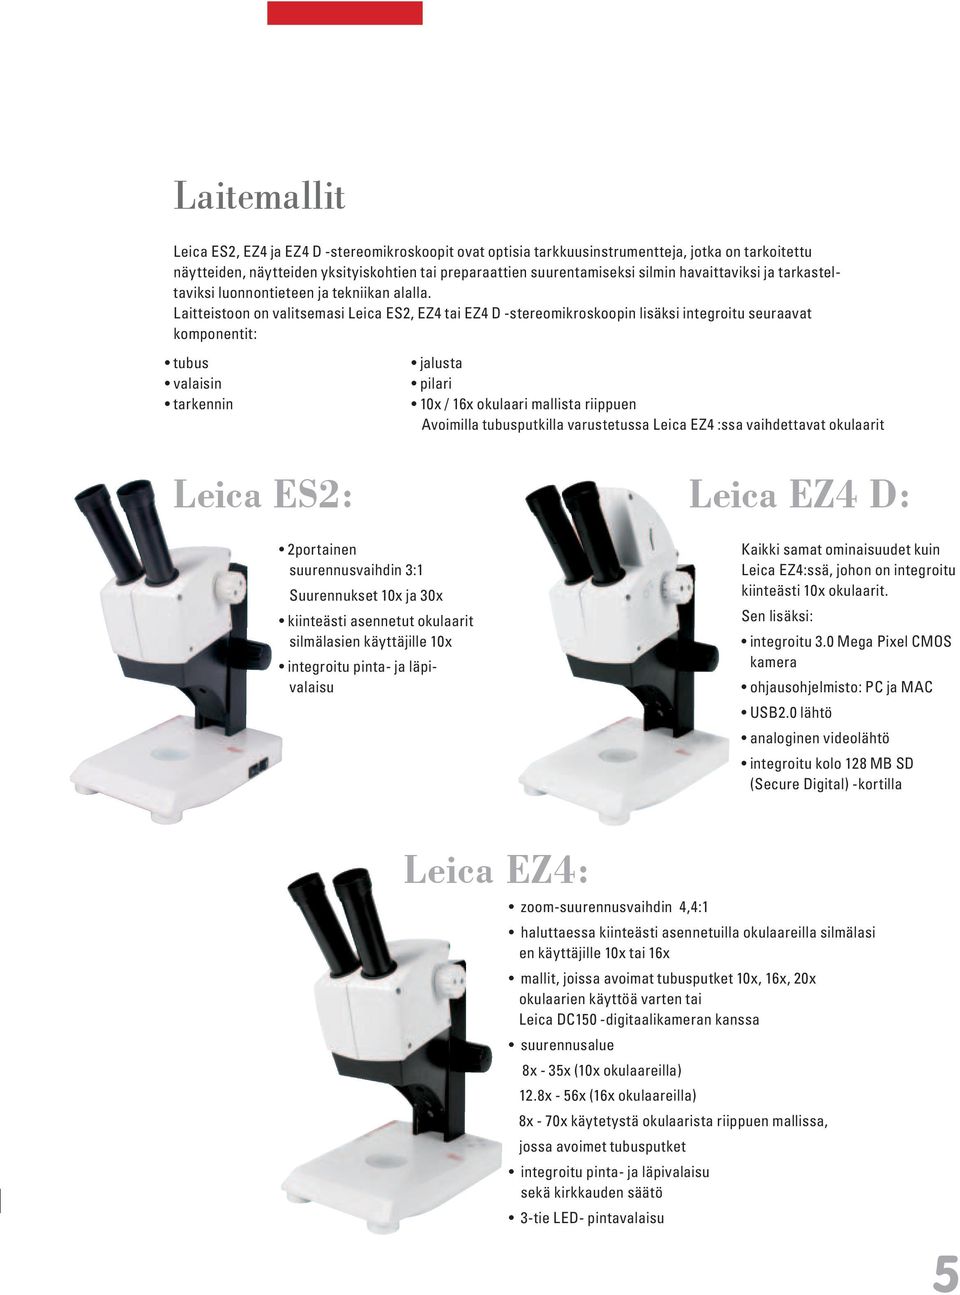 Laitteistoon on valitsemasi Leica ES2, EZ4 tai EZ4 D -stereomikroskoopin lisäksi integroitu seuraavat komponentit: tubus valaisin tarkennin Leica ES2: jalusta pilari 10x / 16x okulaari mallista